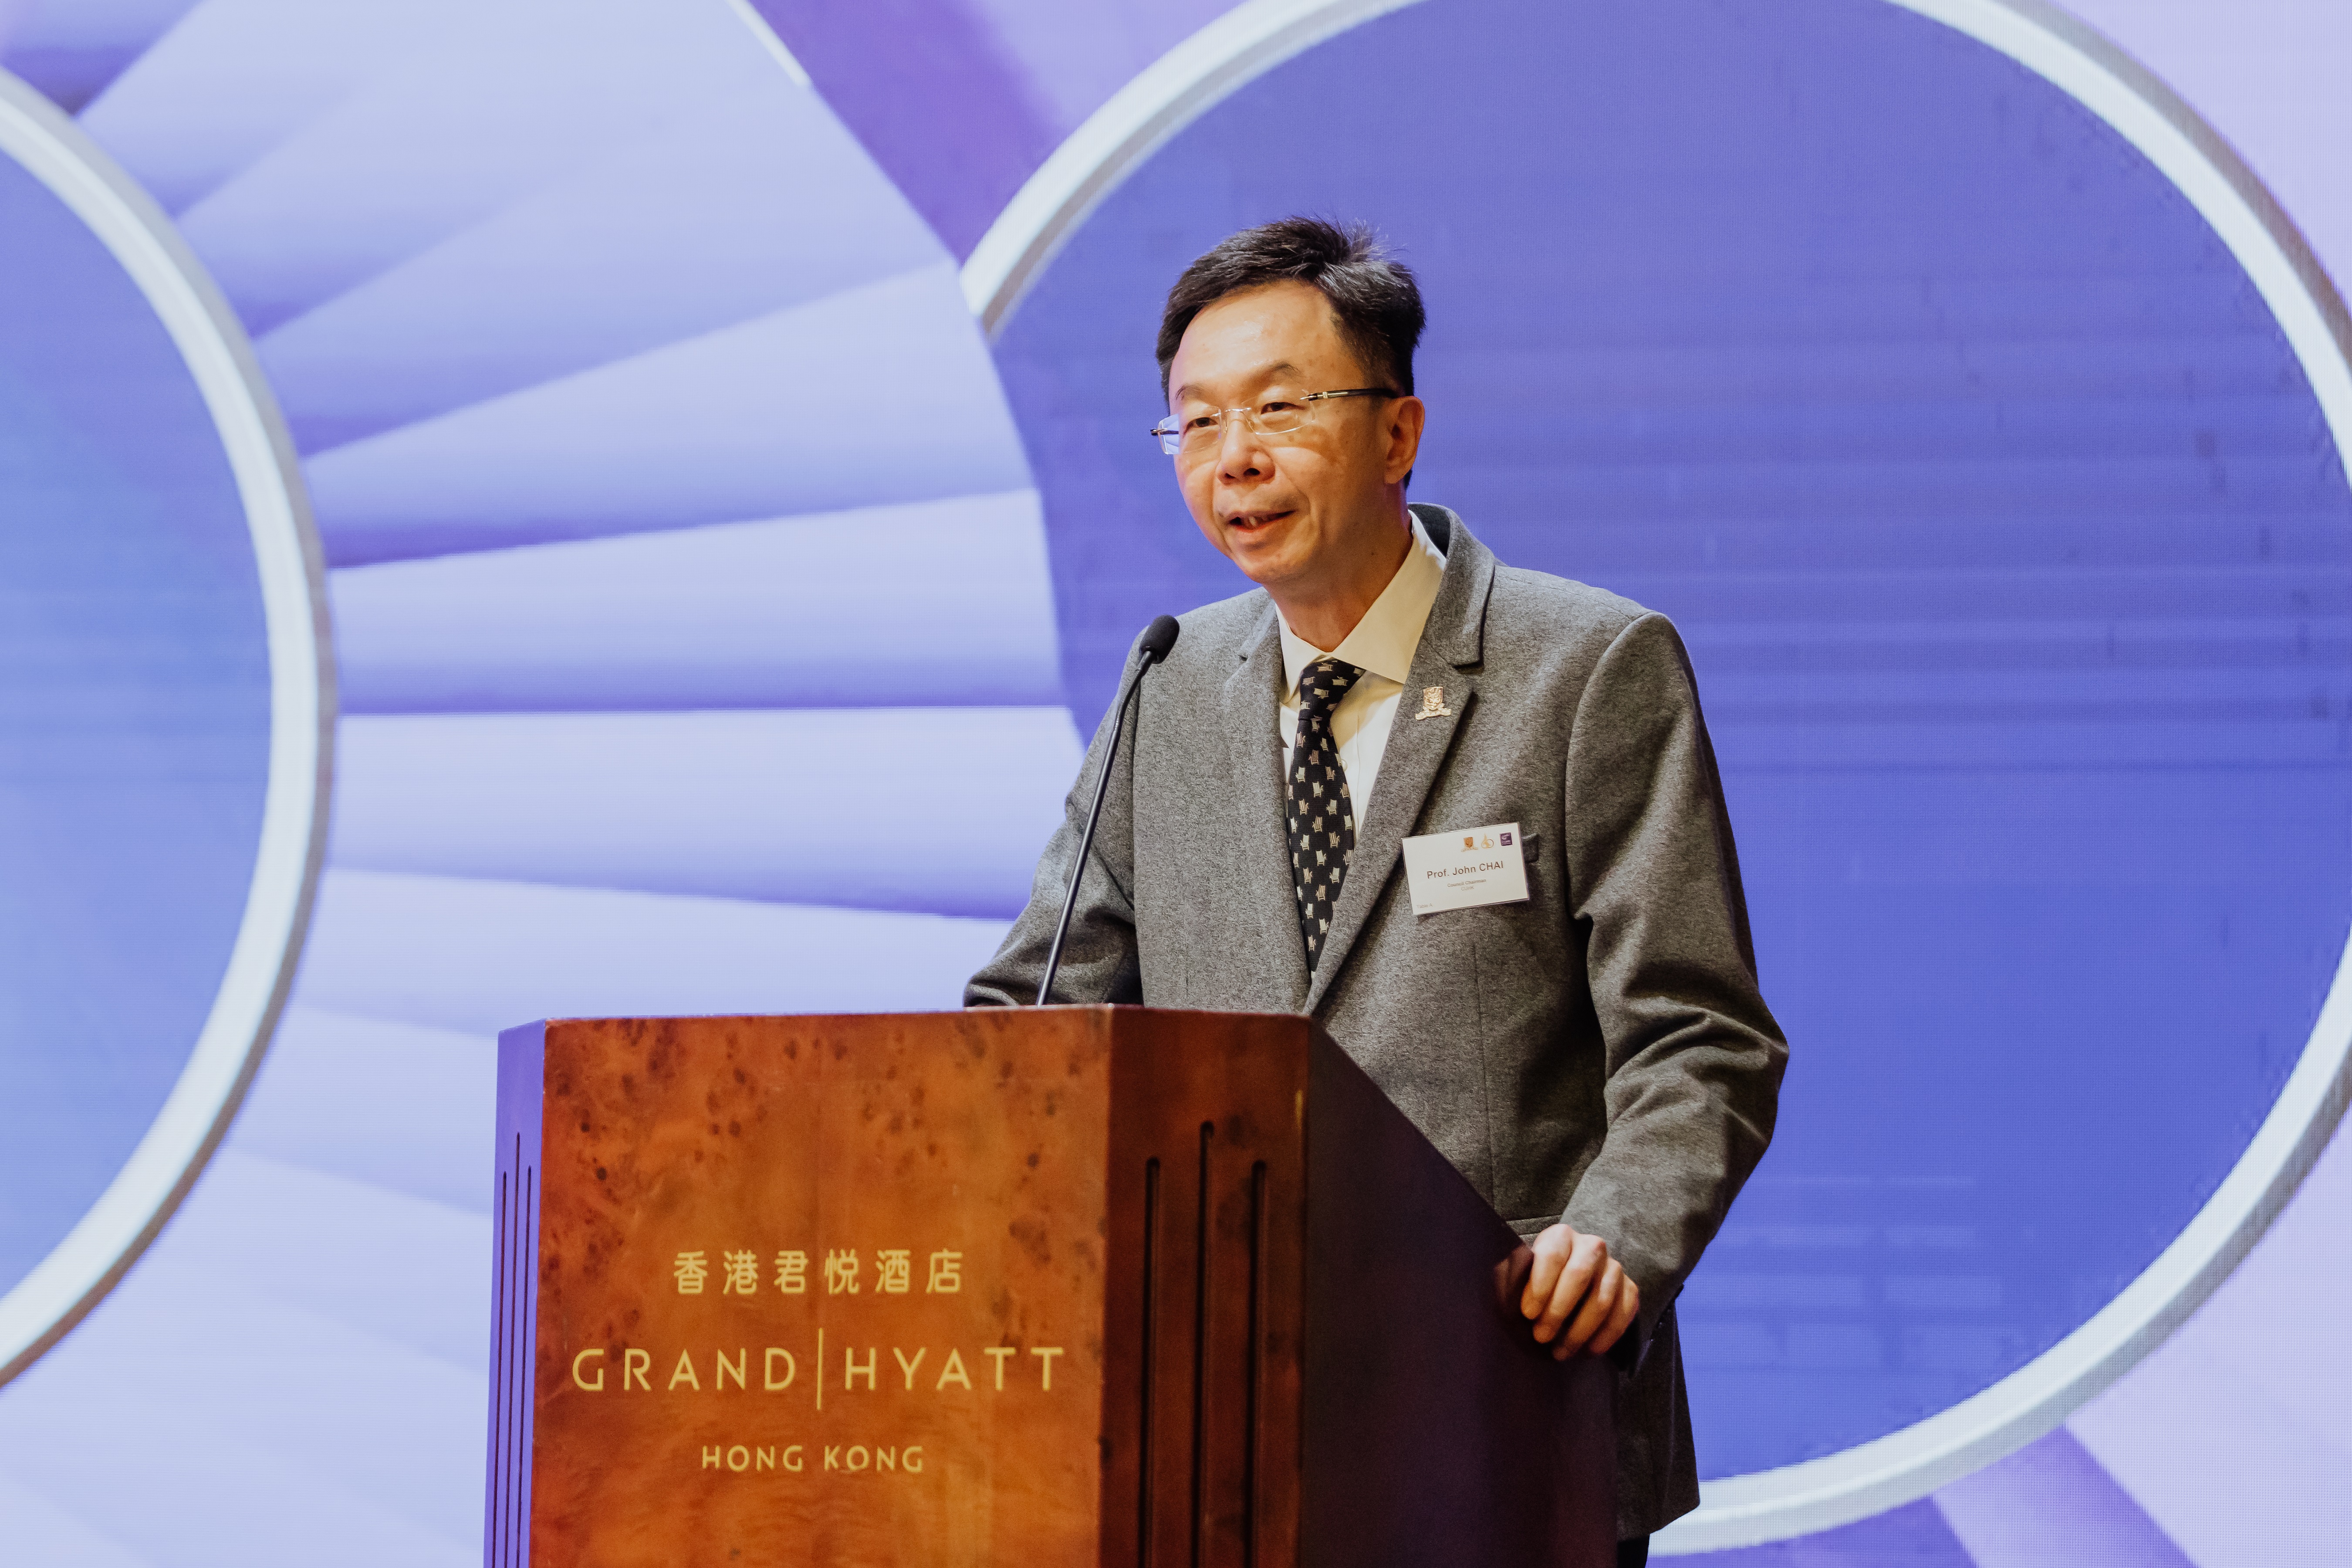 Professor John Chai Yat-chiu, Chairman of CUHK Council, delivers a welcome address.